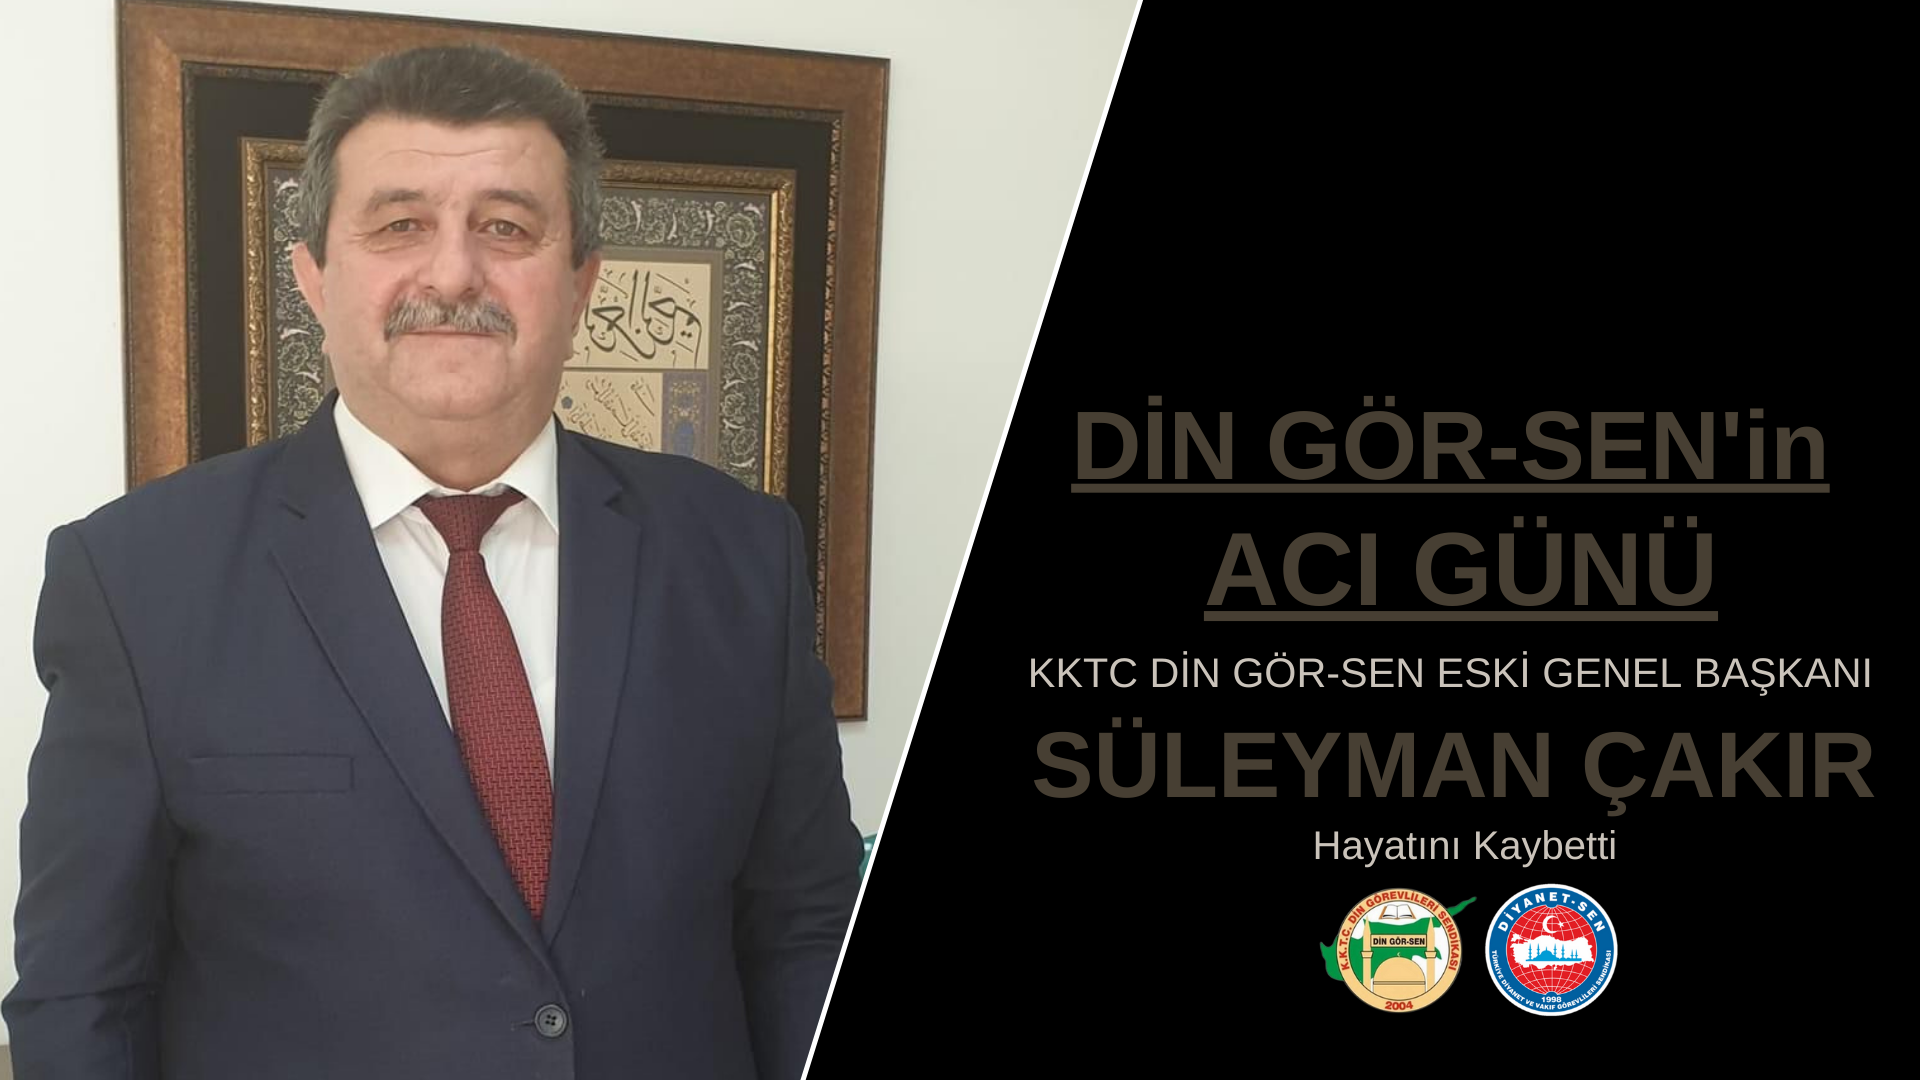 KKTC Din Gör-Sen Eski Genel Başkanı Süleyman Çakır Hayatını Kaybetti